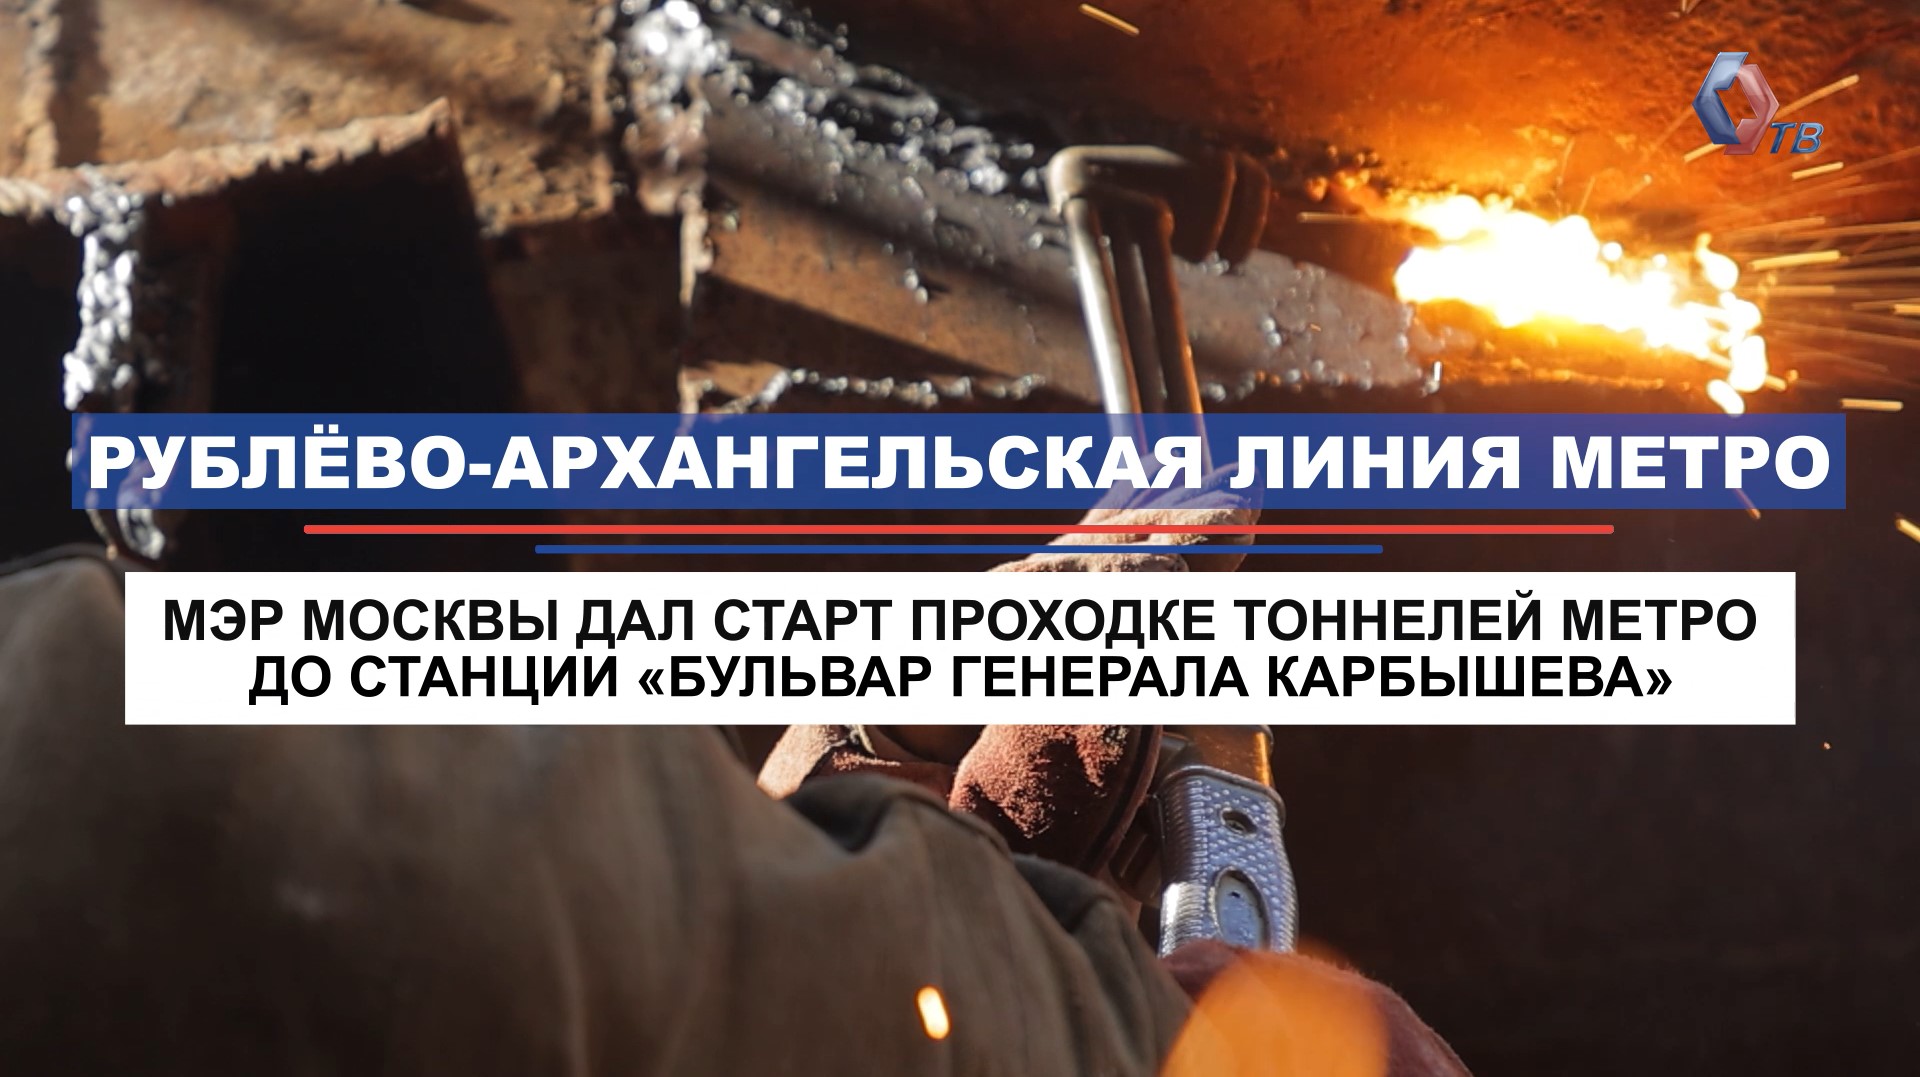 Дан старт проходке двух тоннелей Рублево-Архангельской линии метро